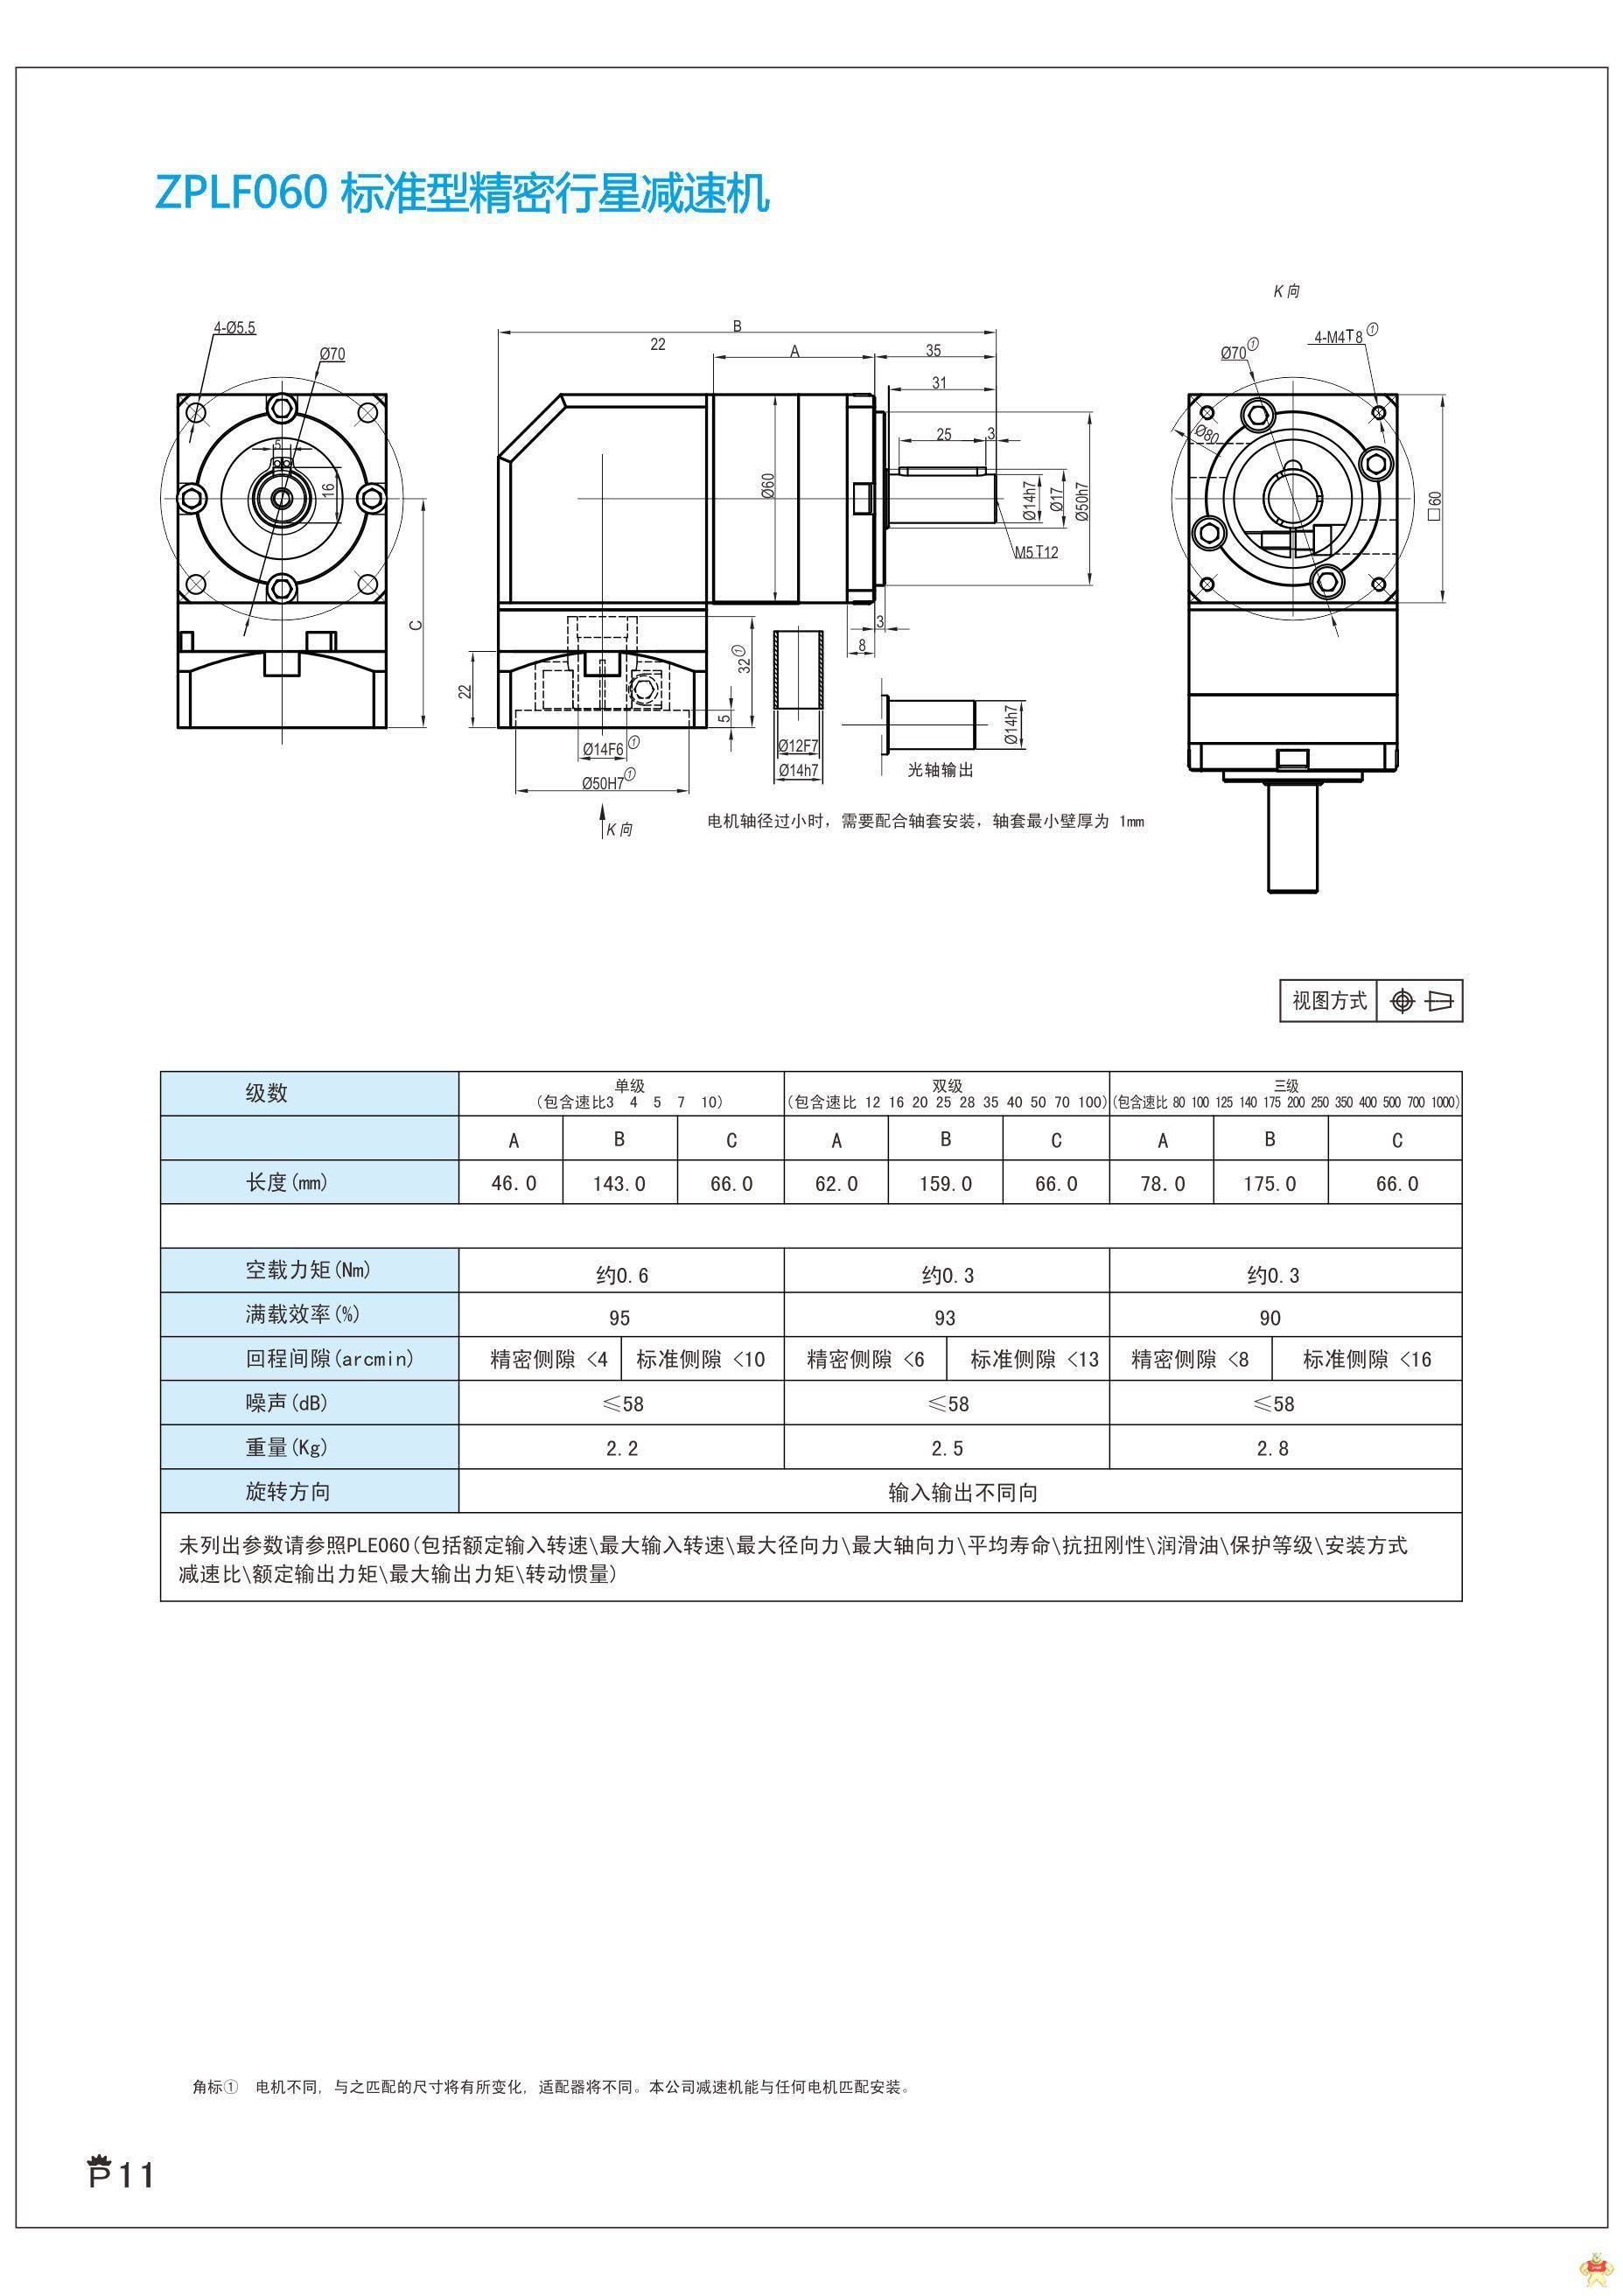 上海兆迈传动现货供应ZPLF060-L1-3-S2-P2精密行星减速机可配0.4KW伺服电机57步进电机